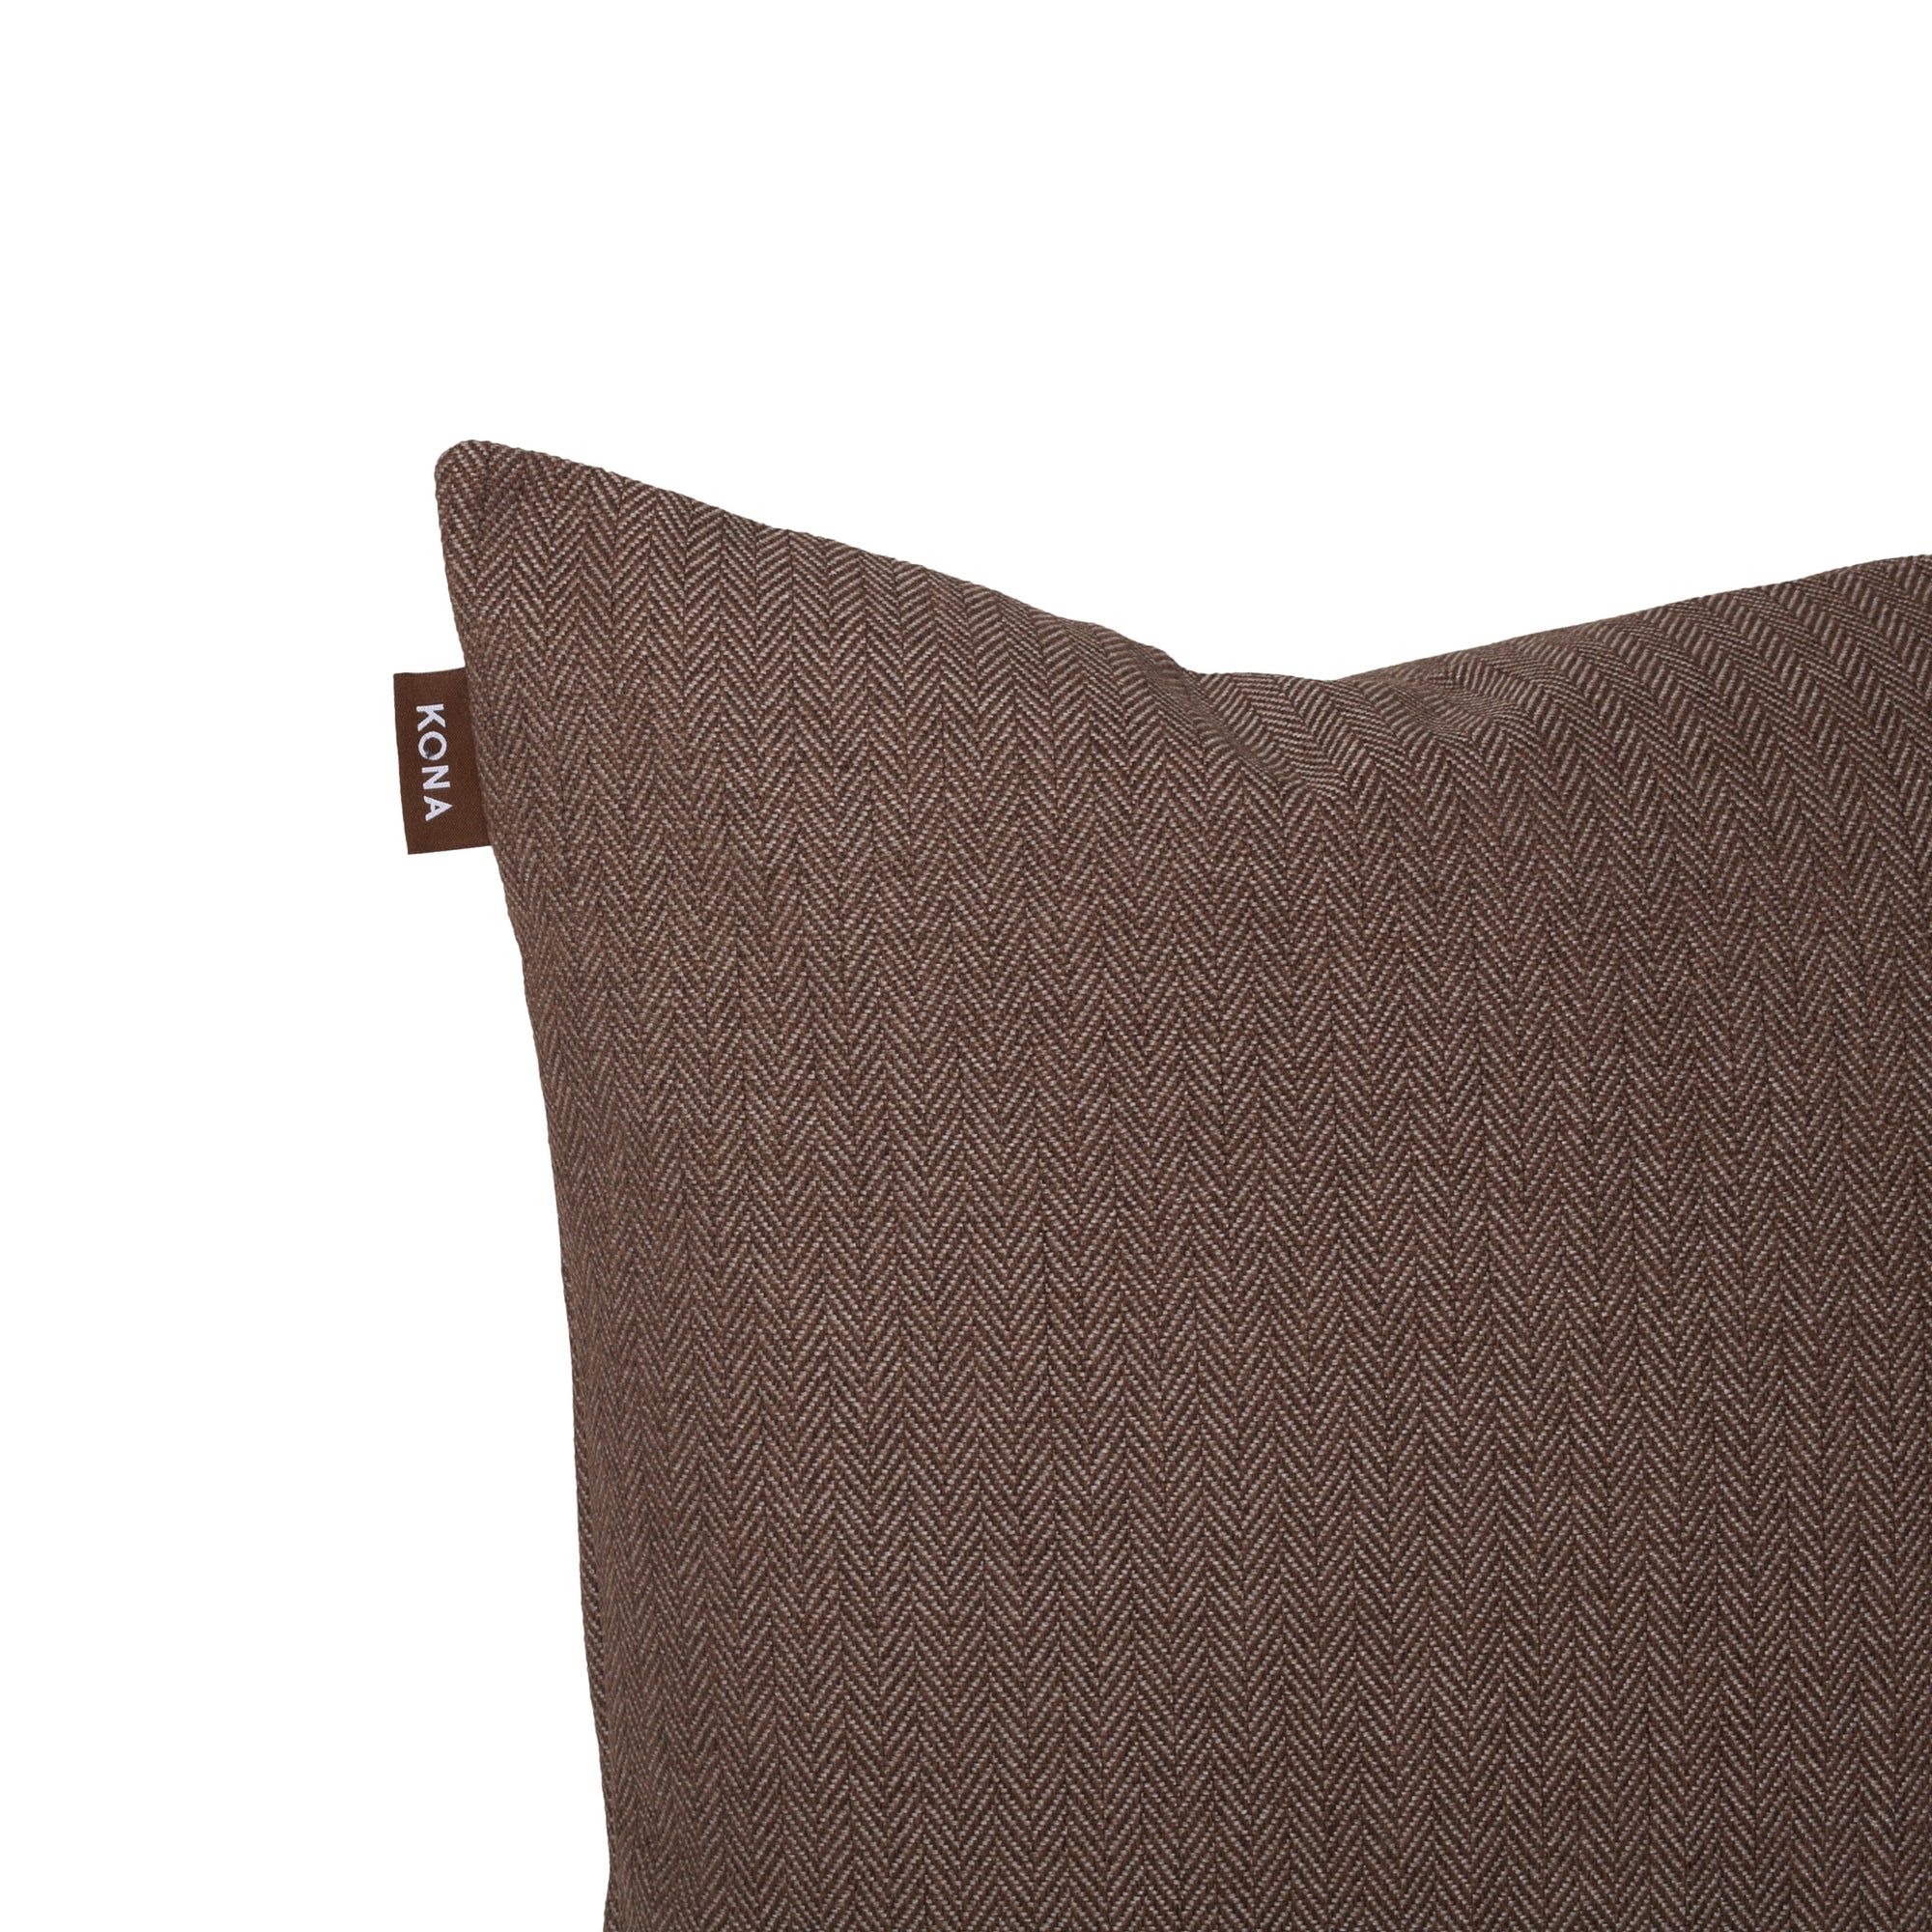 KONA CAVE® Brown Herringbone Pillow Cover 